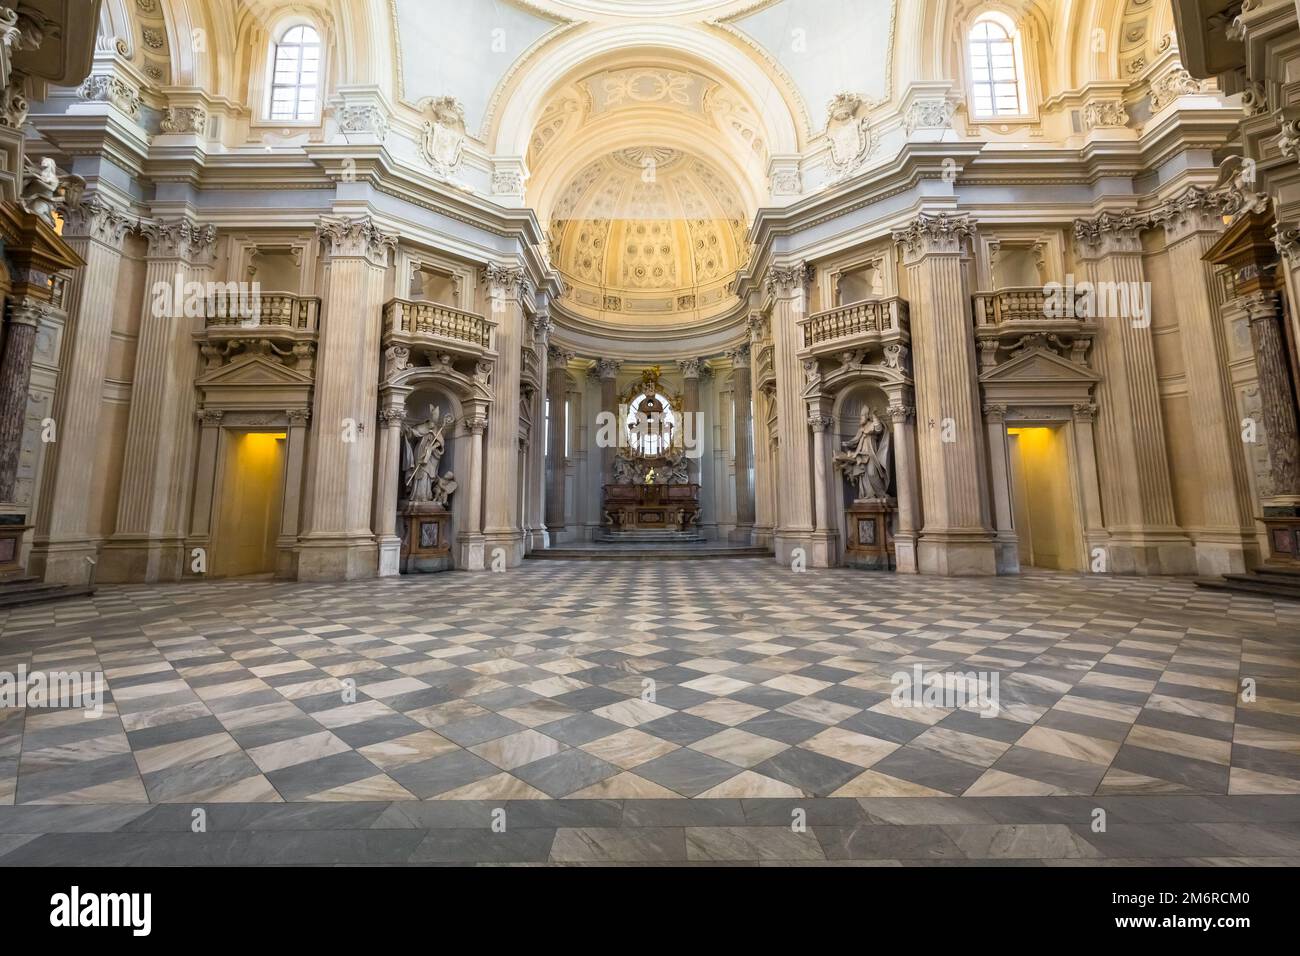 Royal Church in Reggia di Venaria Reale, Turin, Italy. Stock Photo